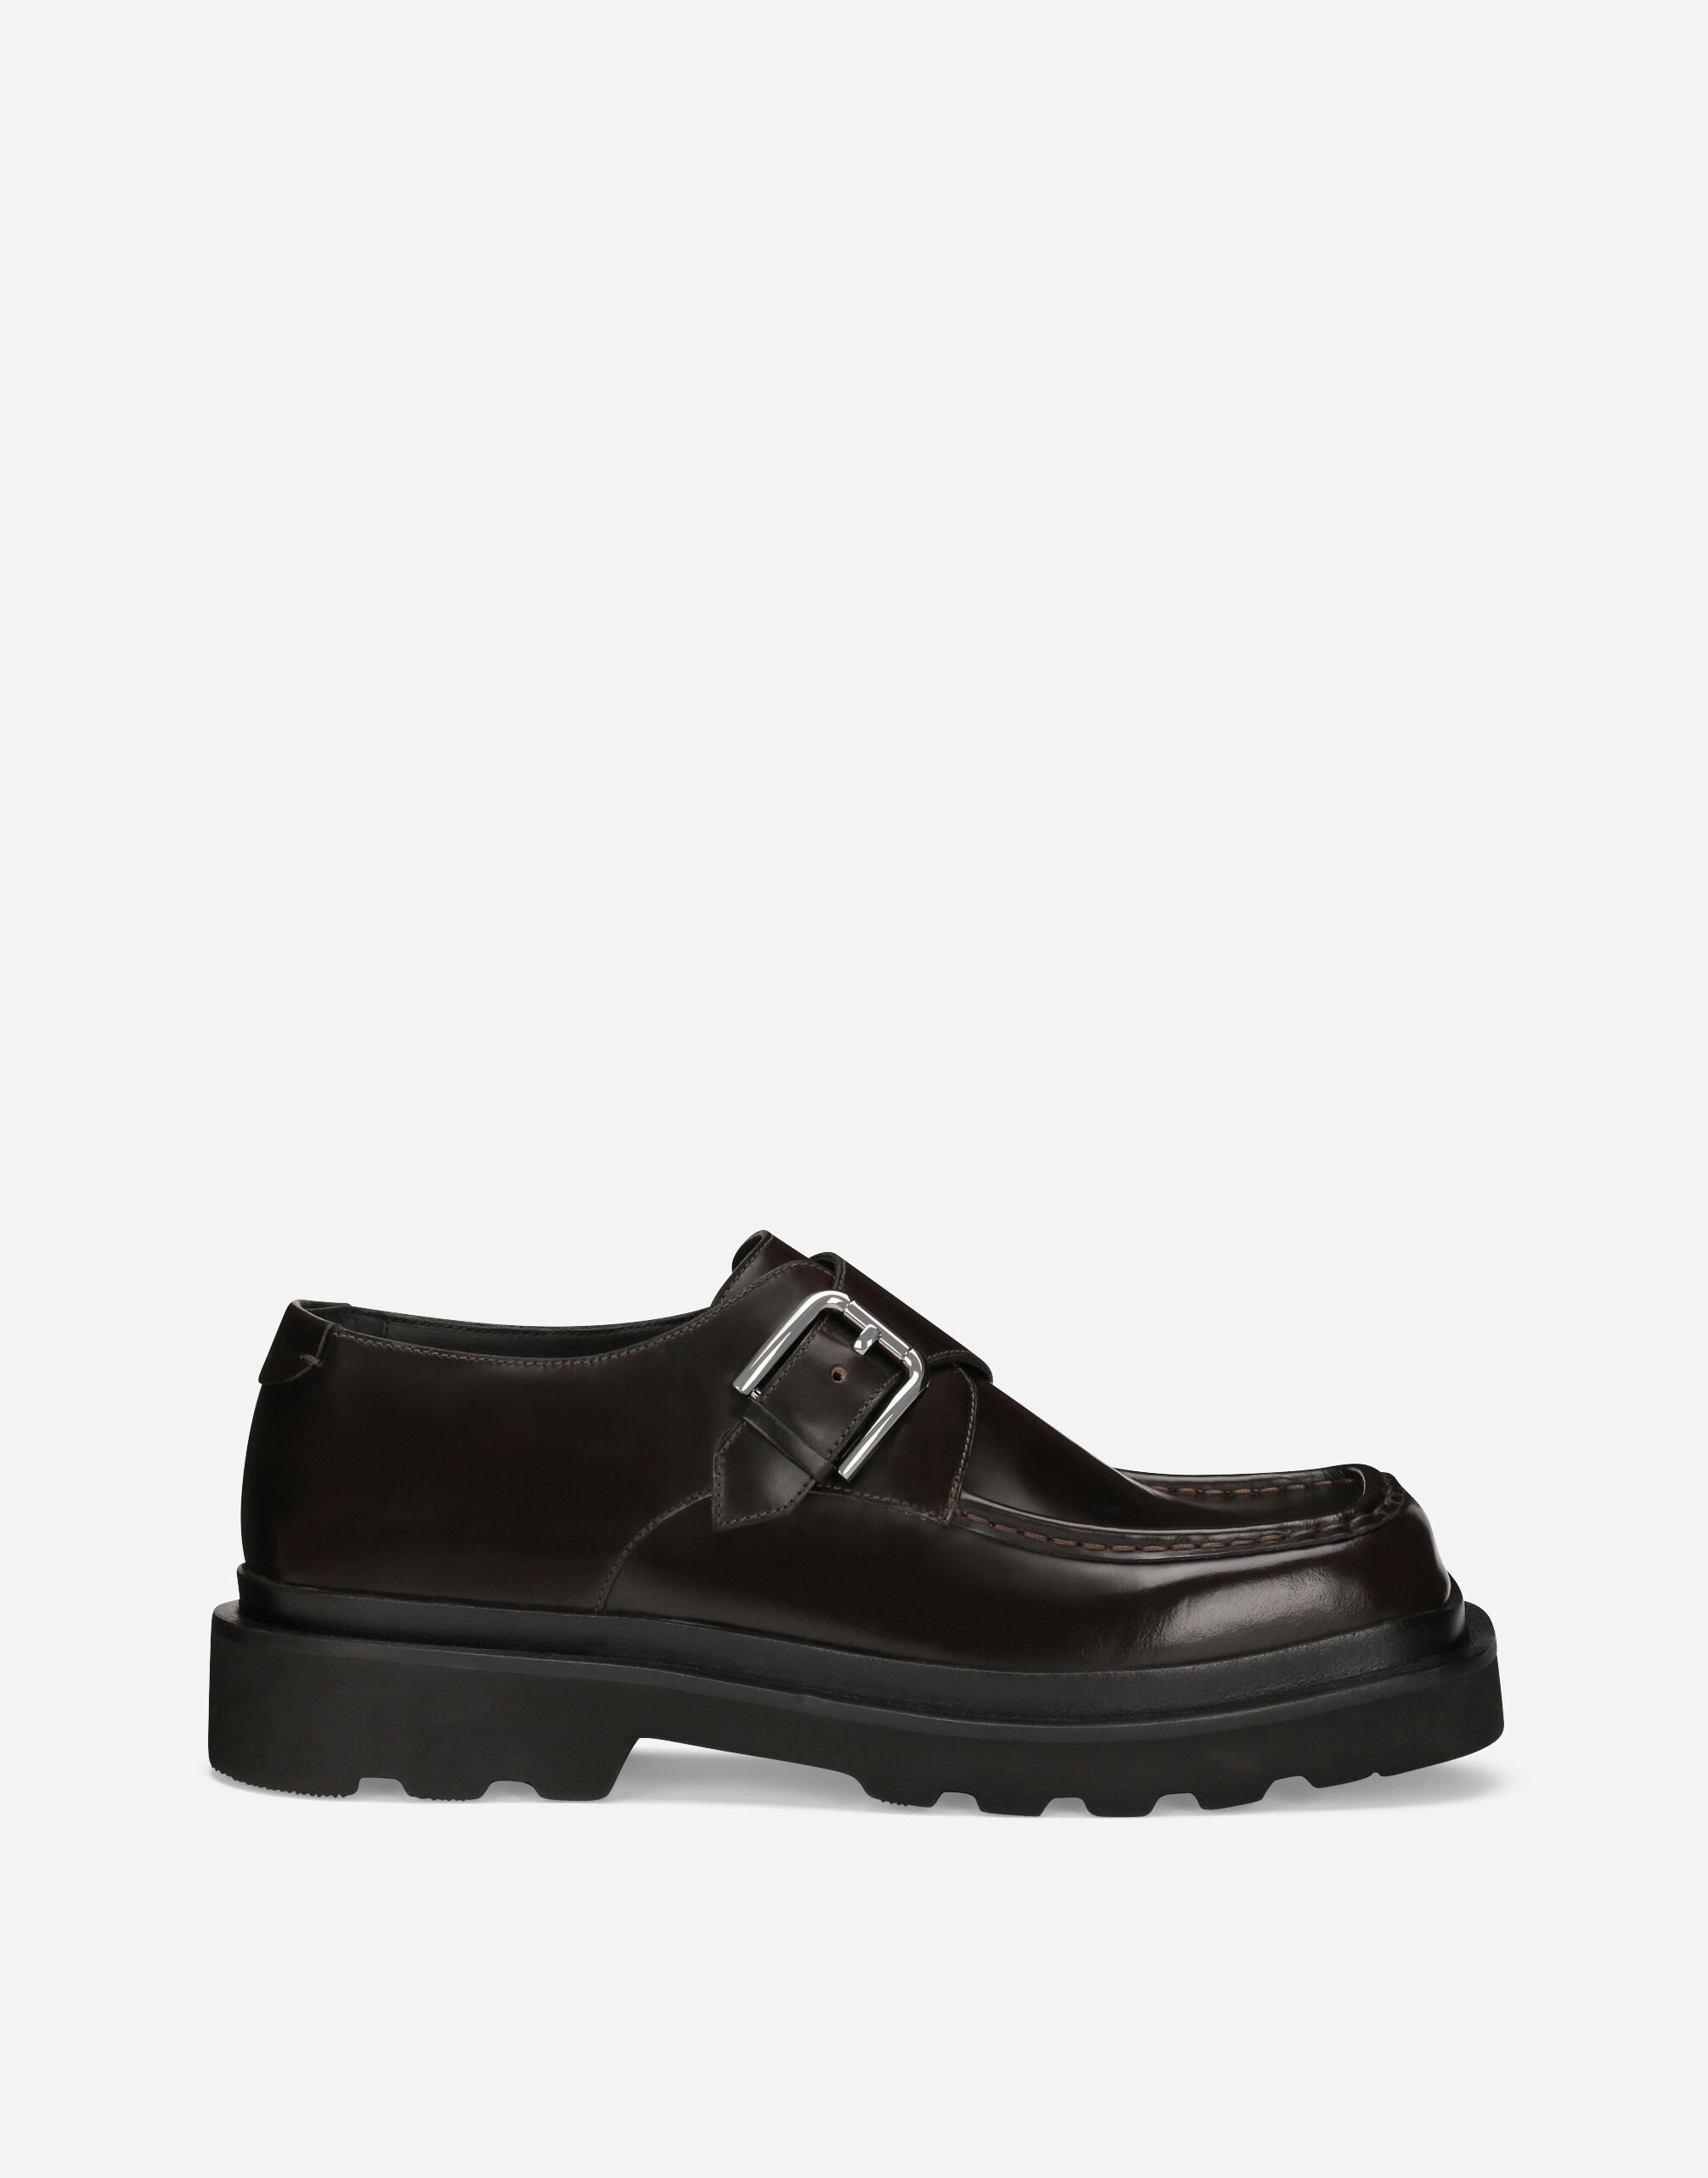 Dolce & Gabbana Zapatos monk en piel de becerro cepillada Negro A10703A1203